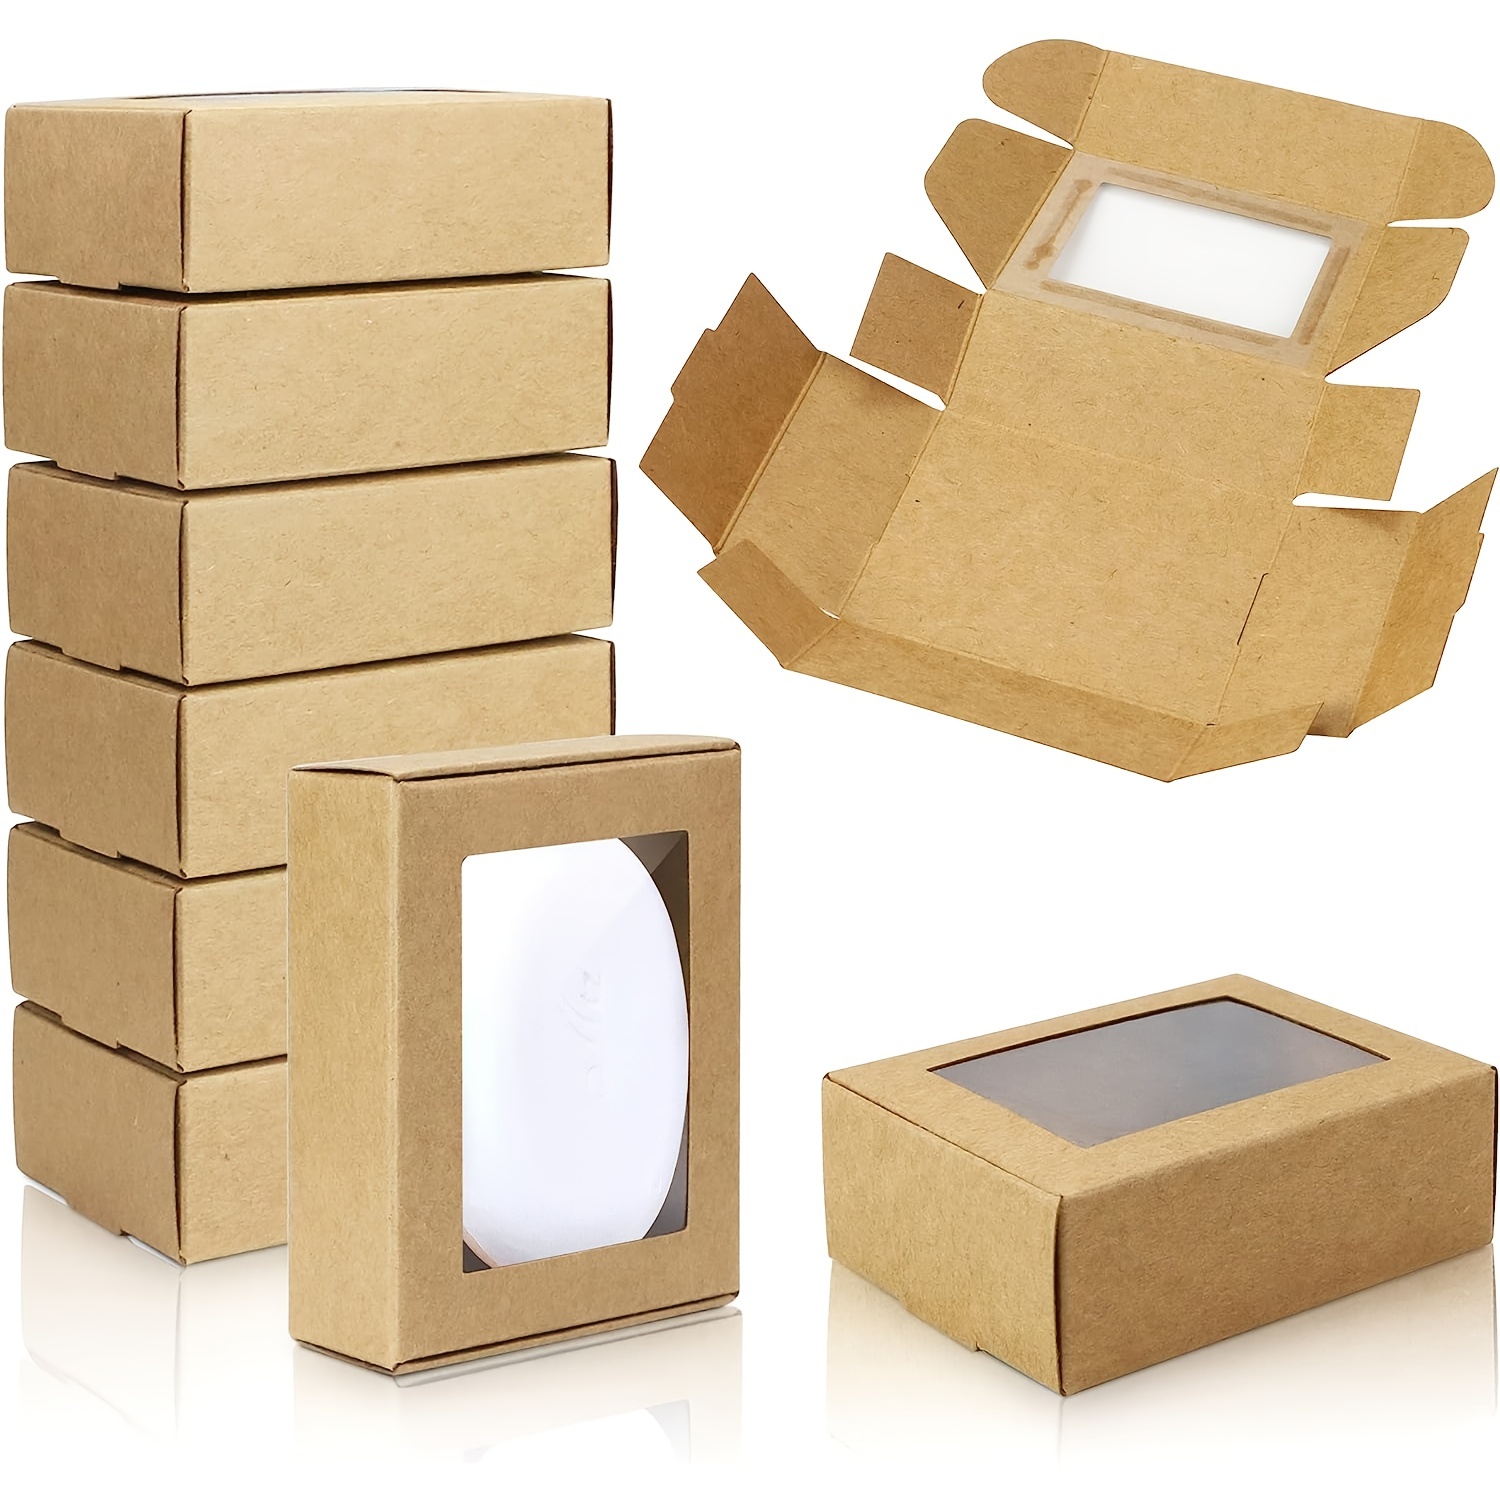 Mano de mujer poniendo muchas cajas pequeñas de cartón dentro de una caja  grande con tapa